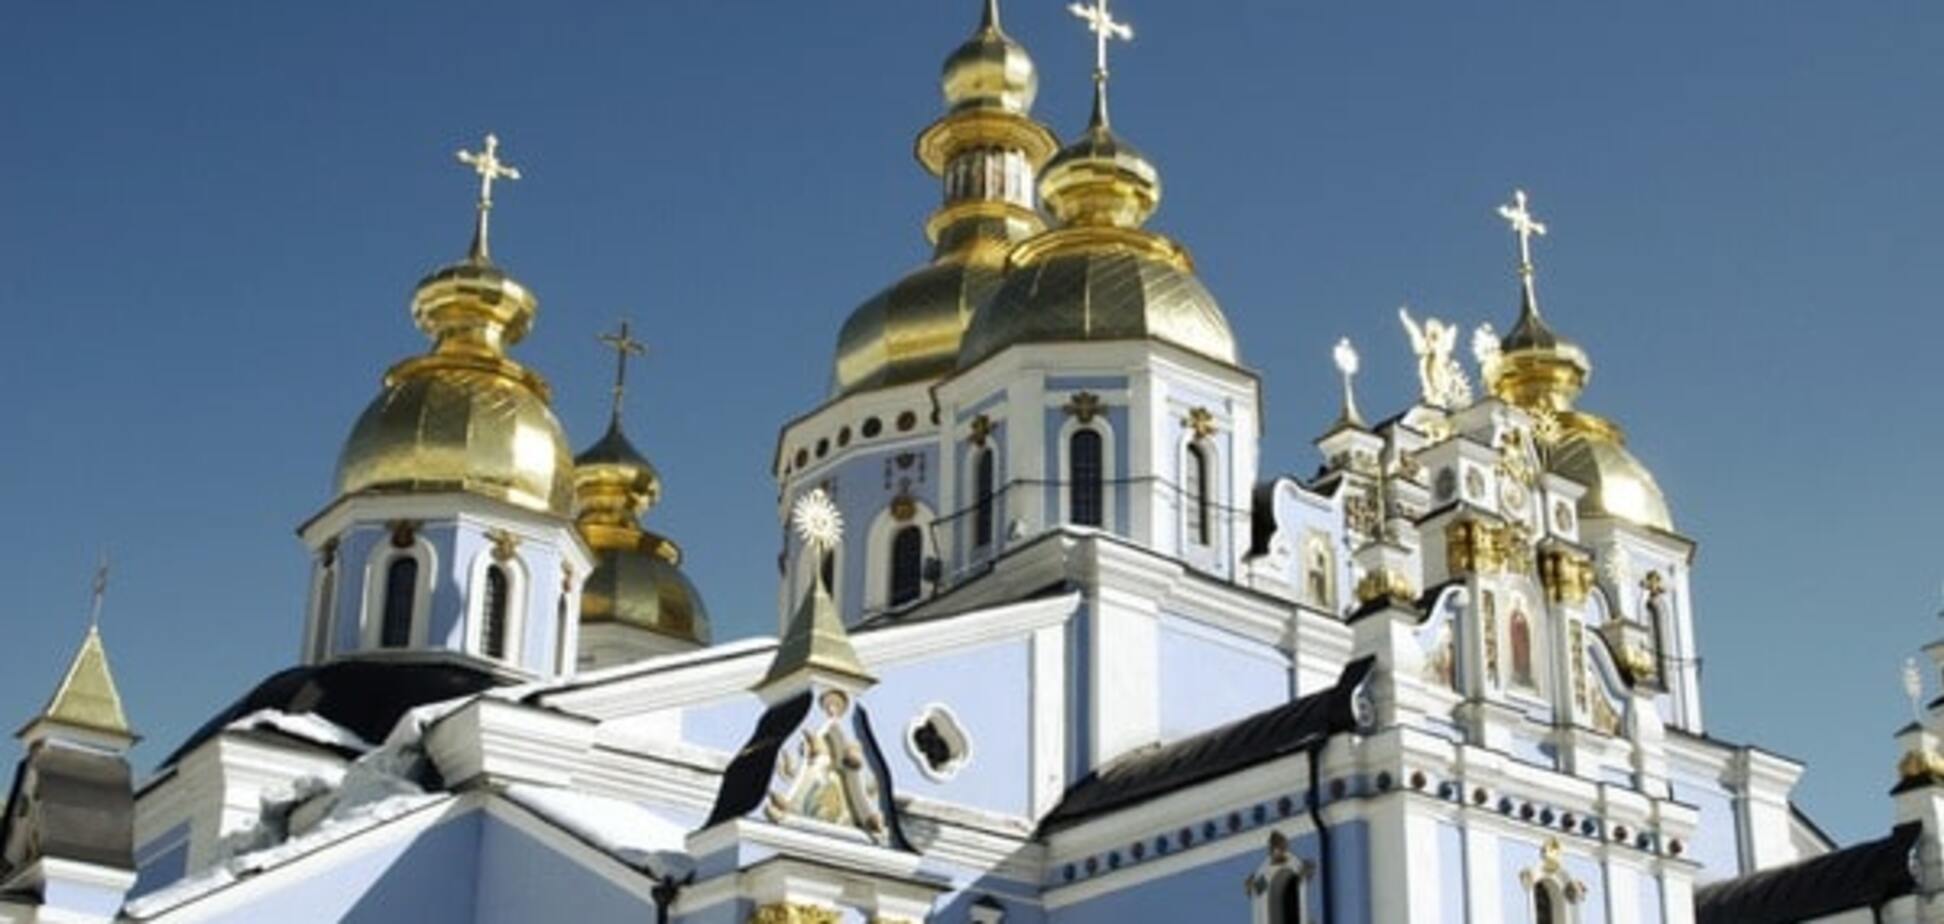 Украинцы доверяют церкви и волонтерам, и не верят Кабмину и российским СМИ - опрос